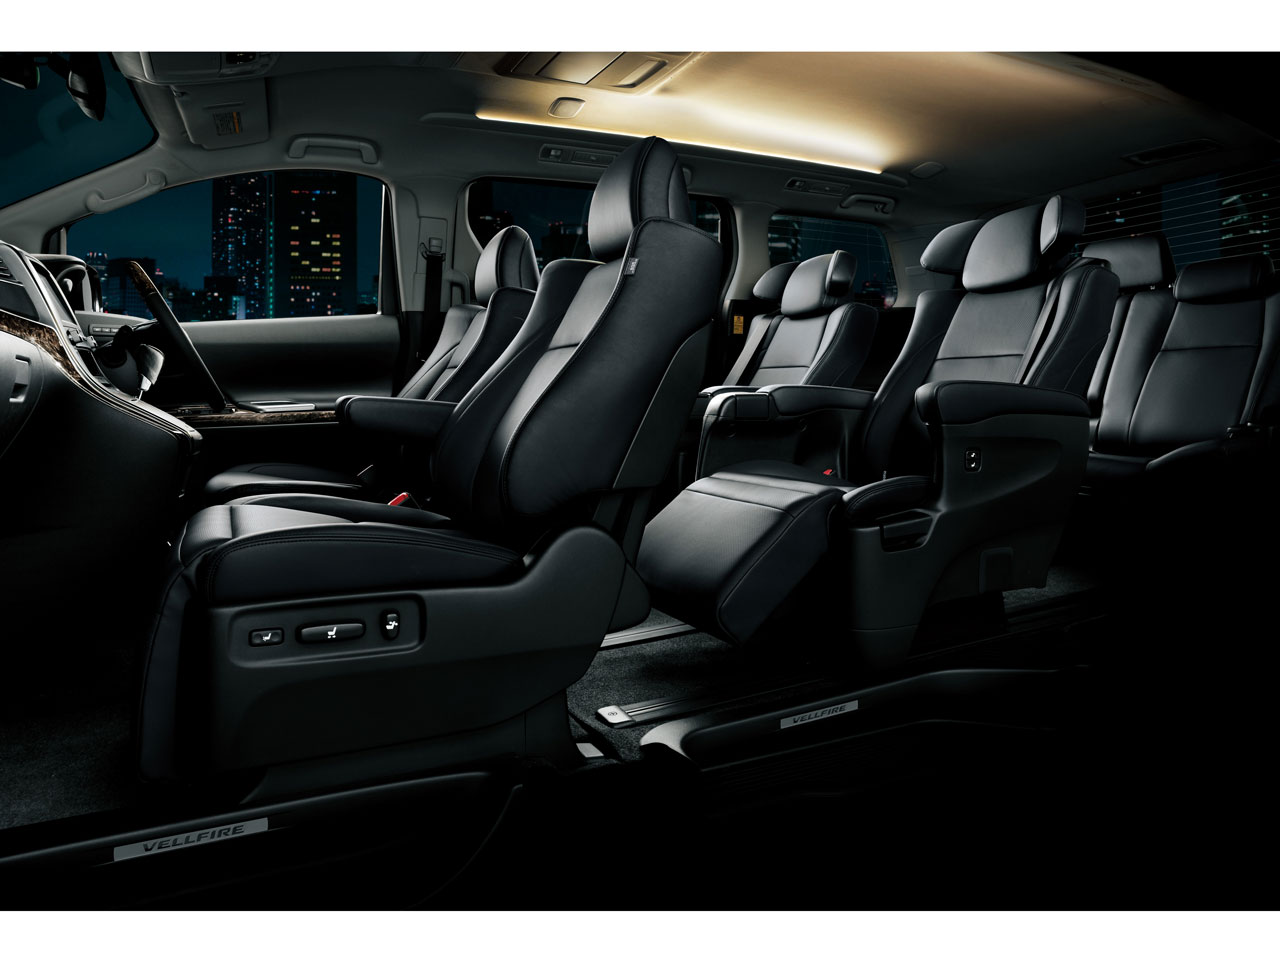 トヨタ ヴェルファイア 08年モデル 2 4z プラチナセレクション 2の価格 性能 装備 オプション 10年4月1日発売 価格 Com